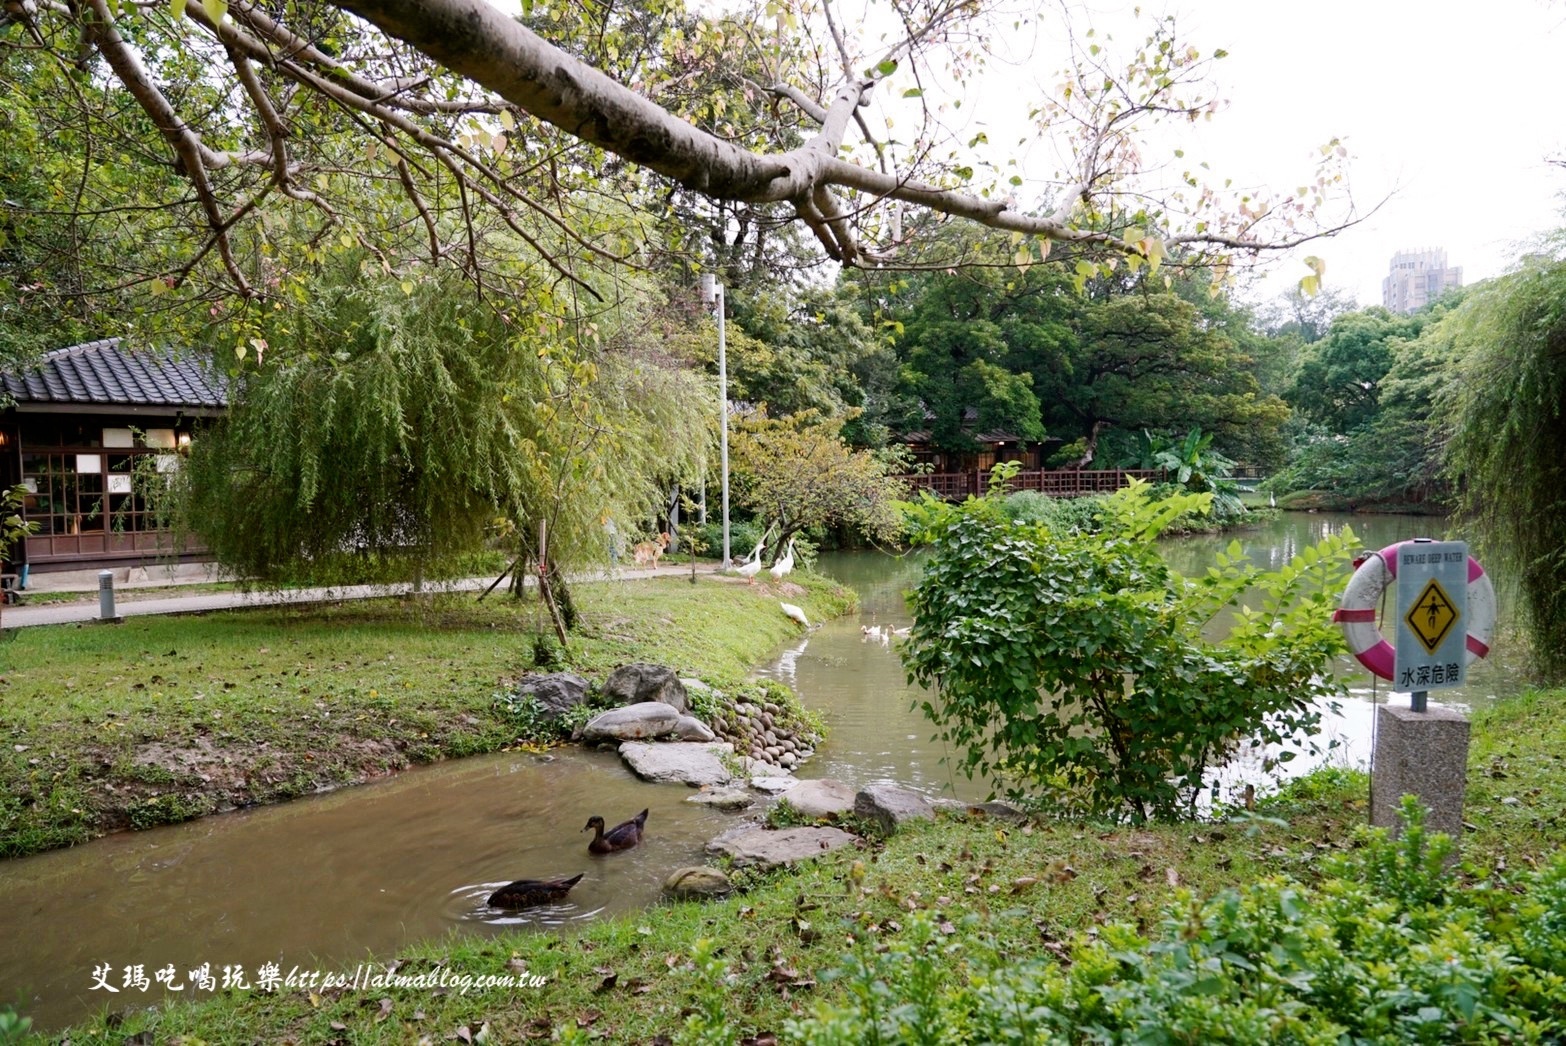 麗池畔,新竹公園,老宅,定食,日料,立體拉花,麗池生活美學館,餵食,公園,免費景點,鯖魚定食